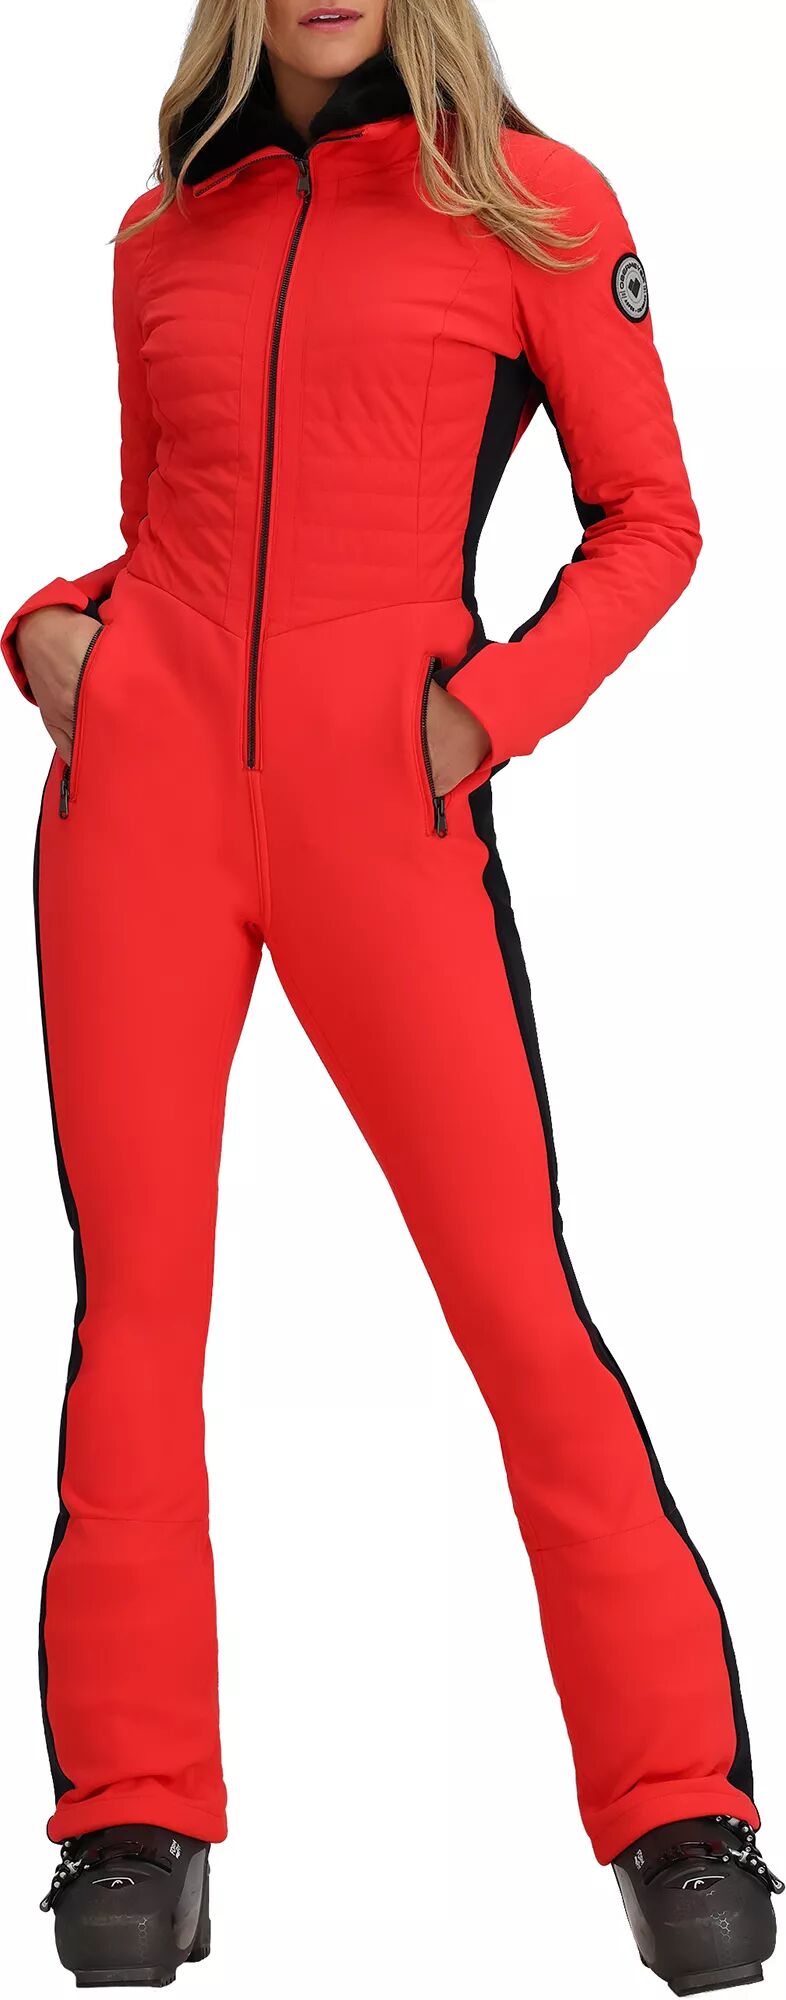 Photos - Ski Wear Obermeyer Women's Katze Winter Suit, Size 6, Orange 20obewwktzstxxxxxapo